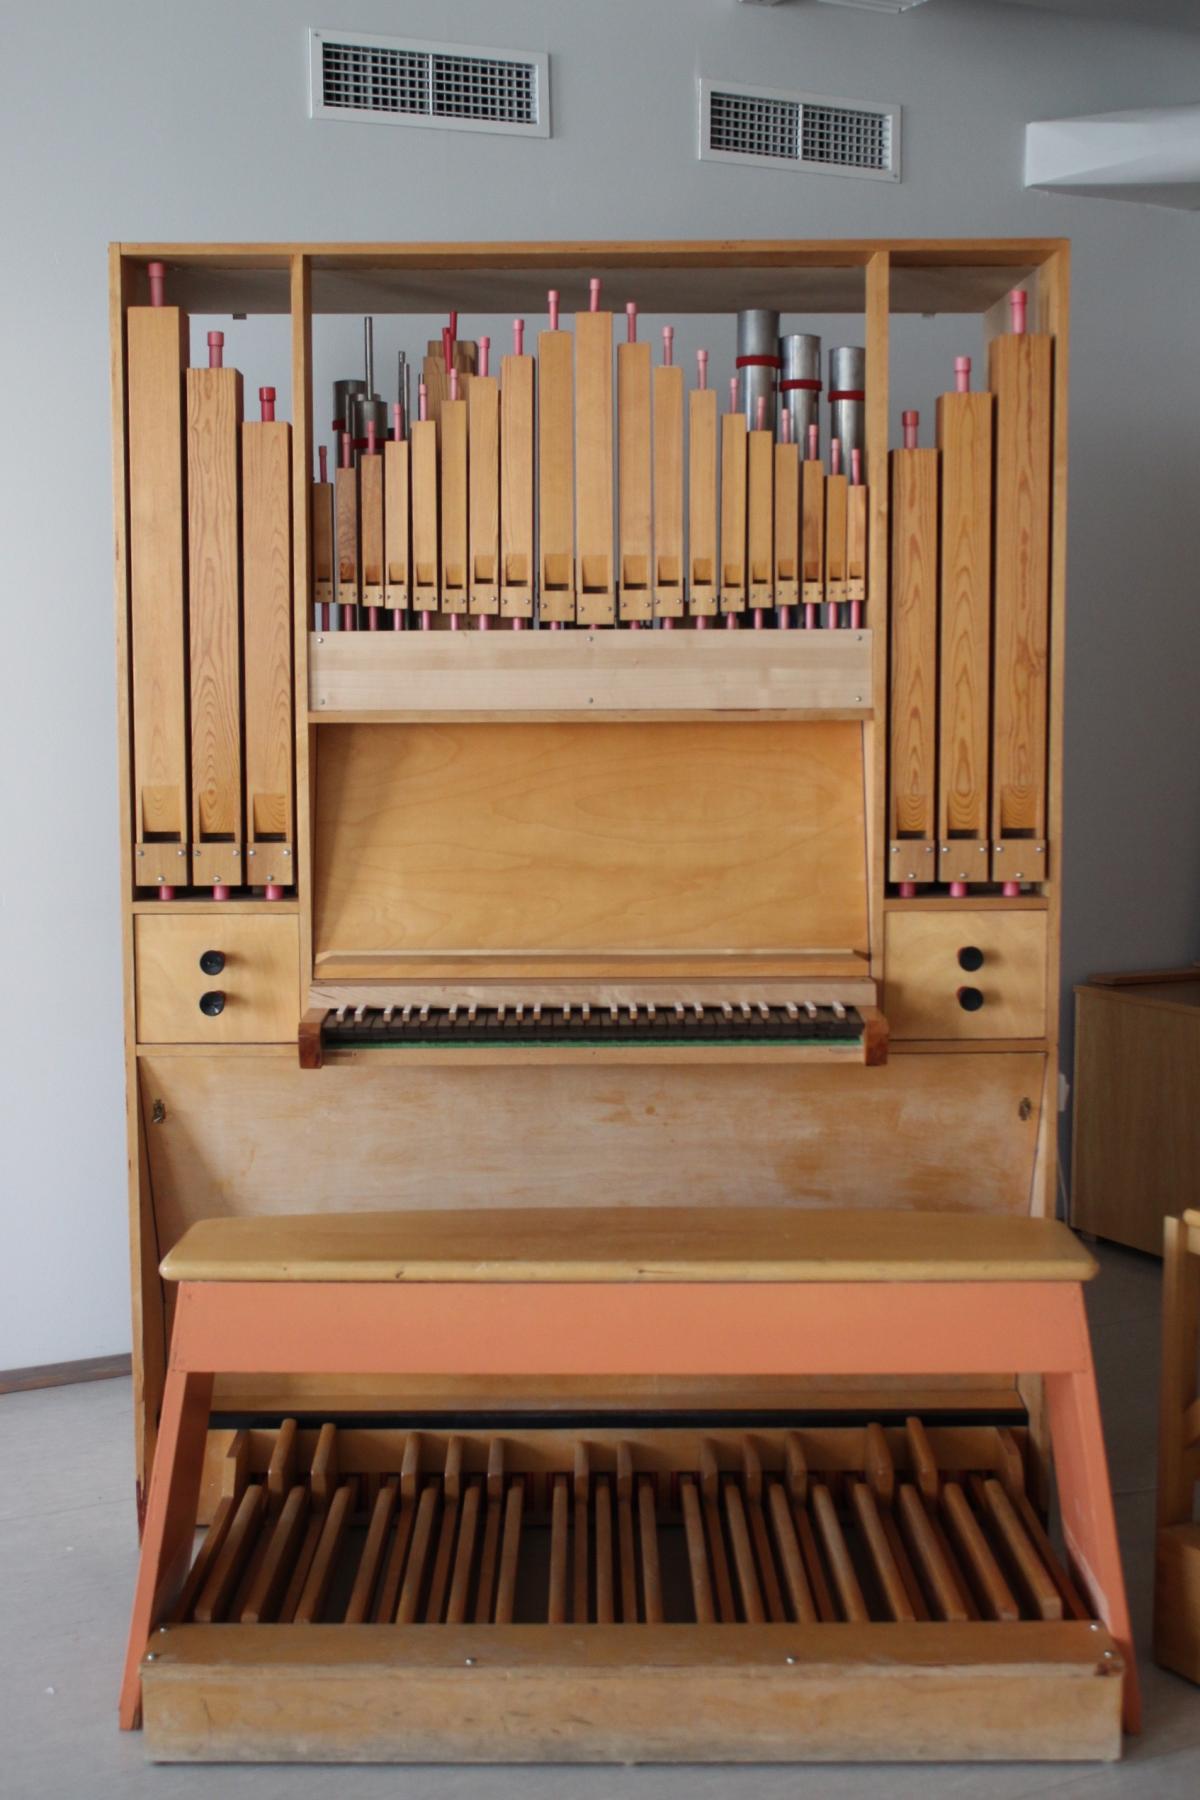 Heinrich organ